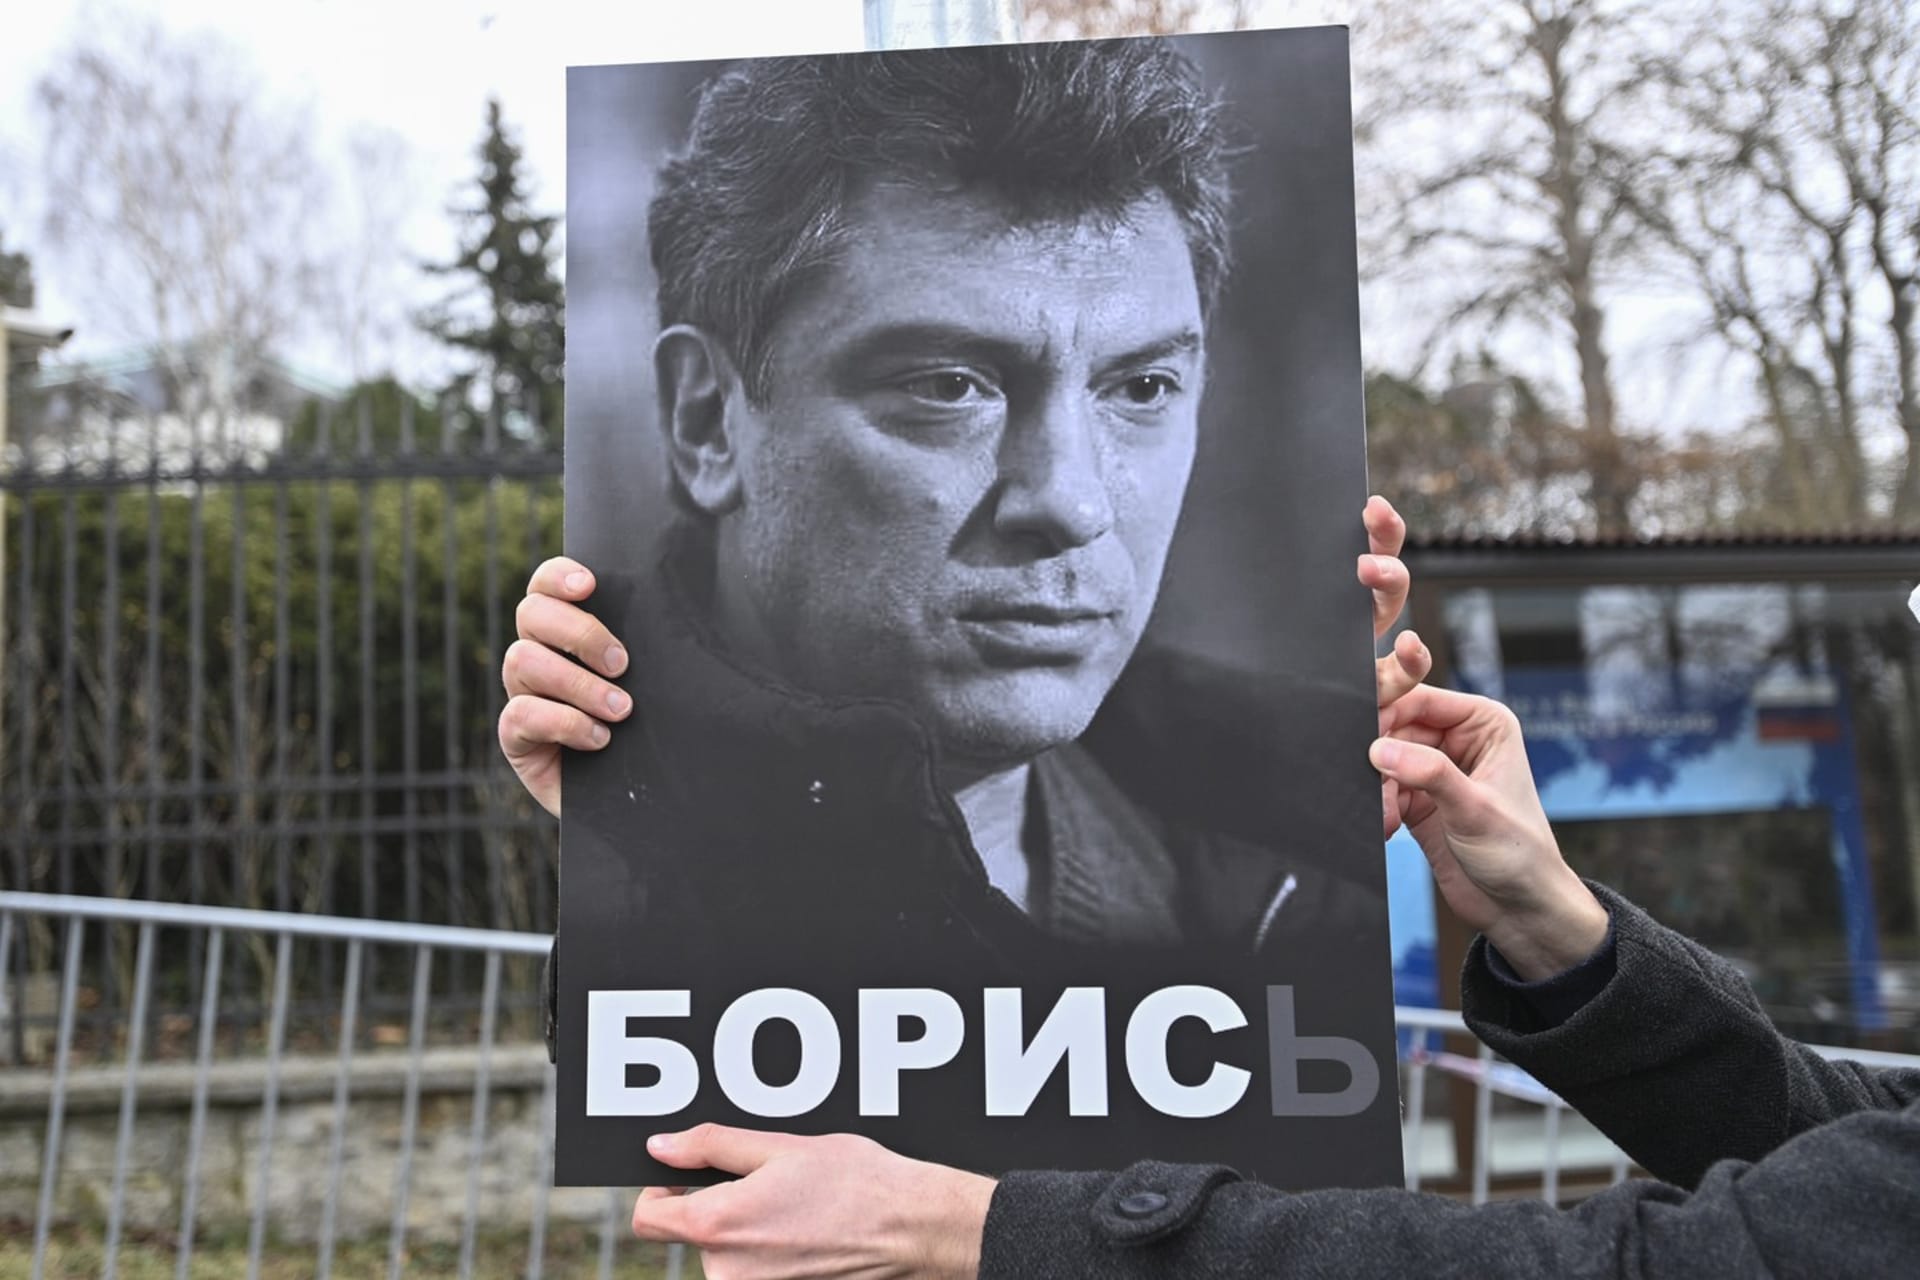 Setkání na památku Borise Němcova před ruskou ambasádou v Praze (27. 2. 2021)